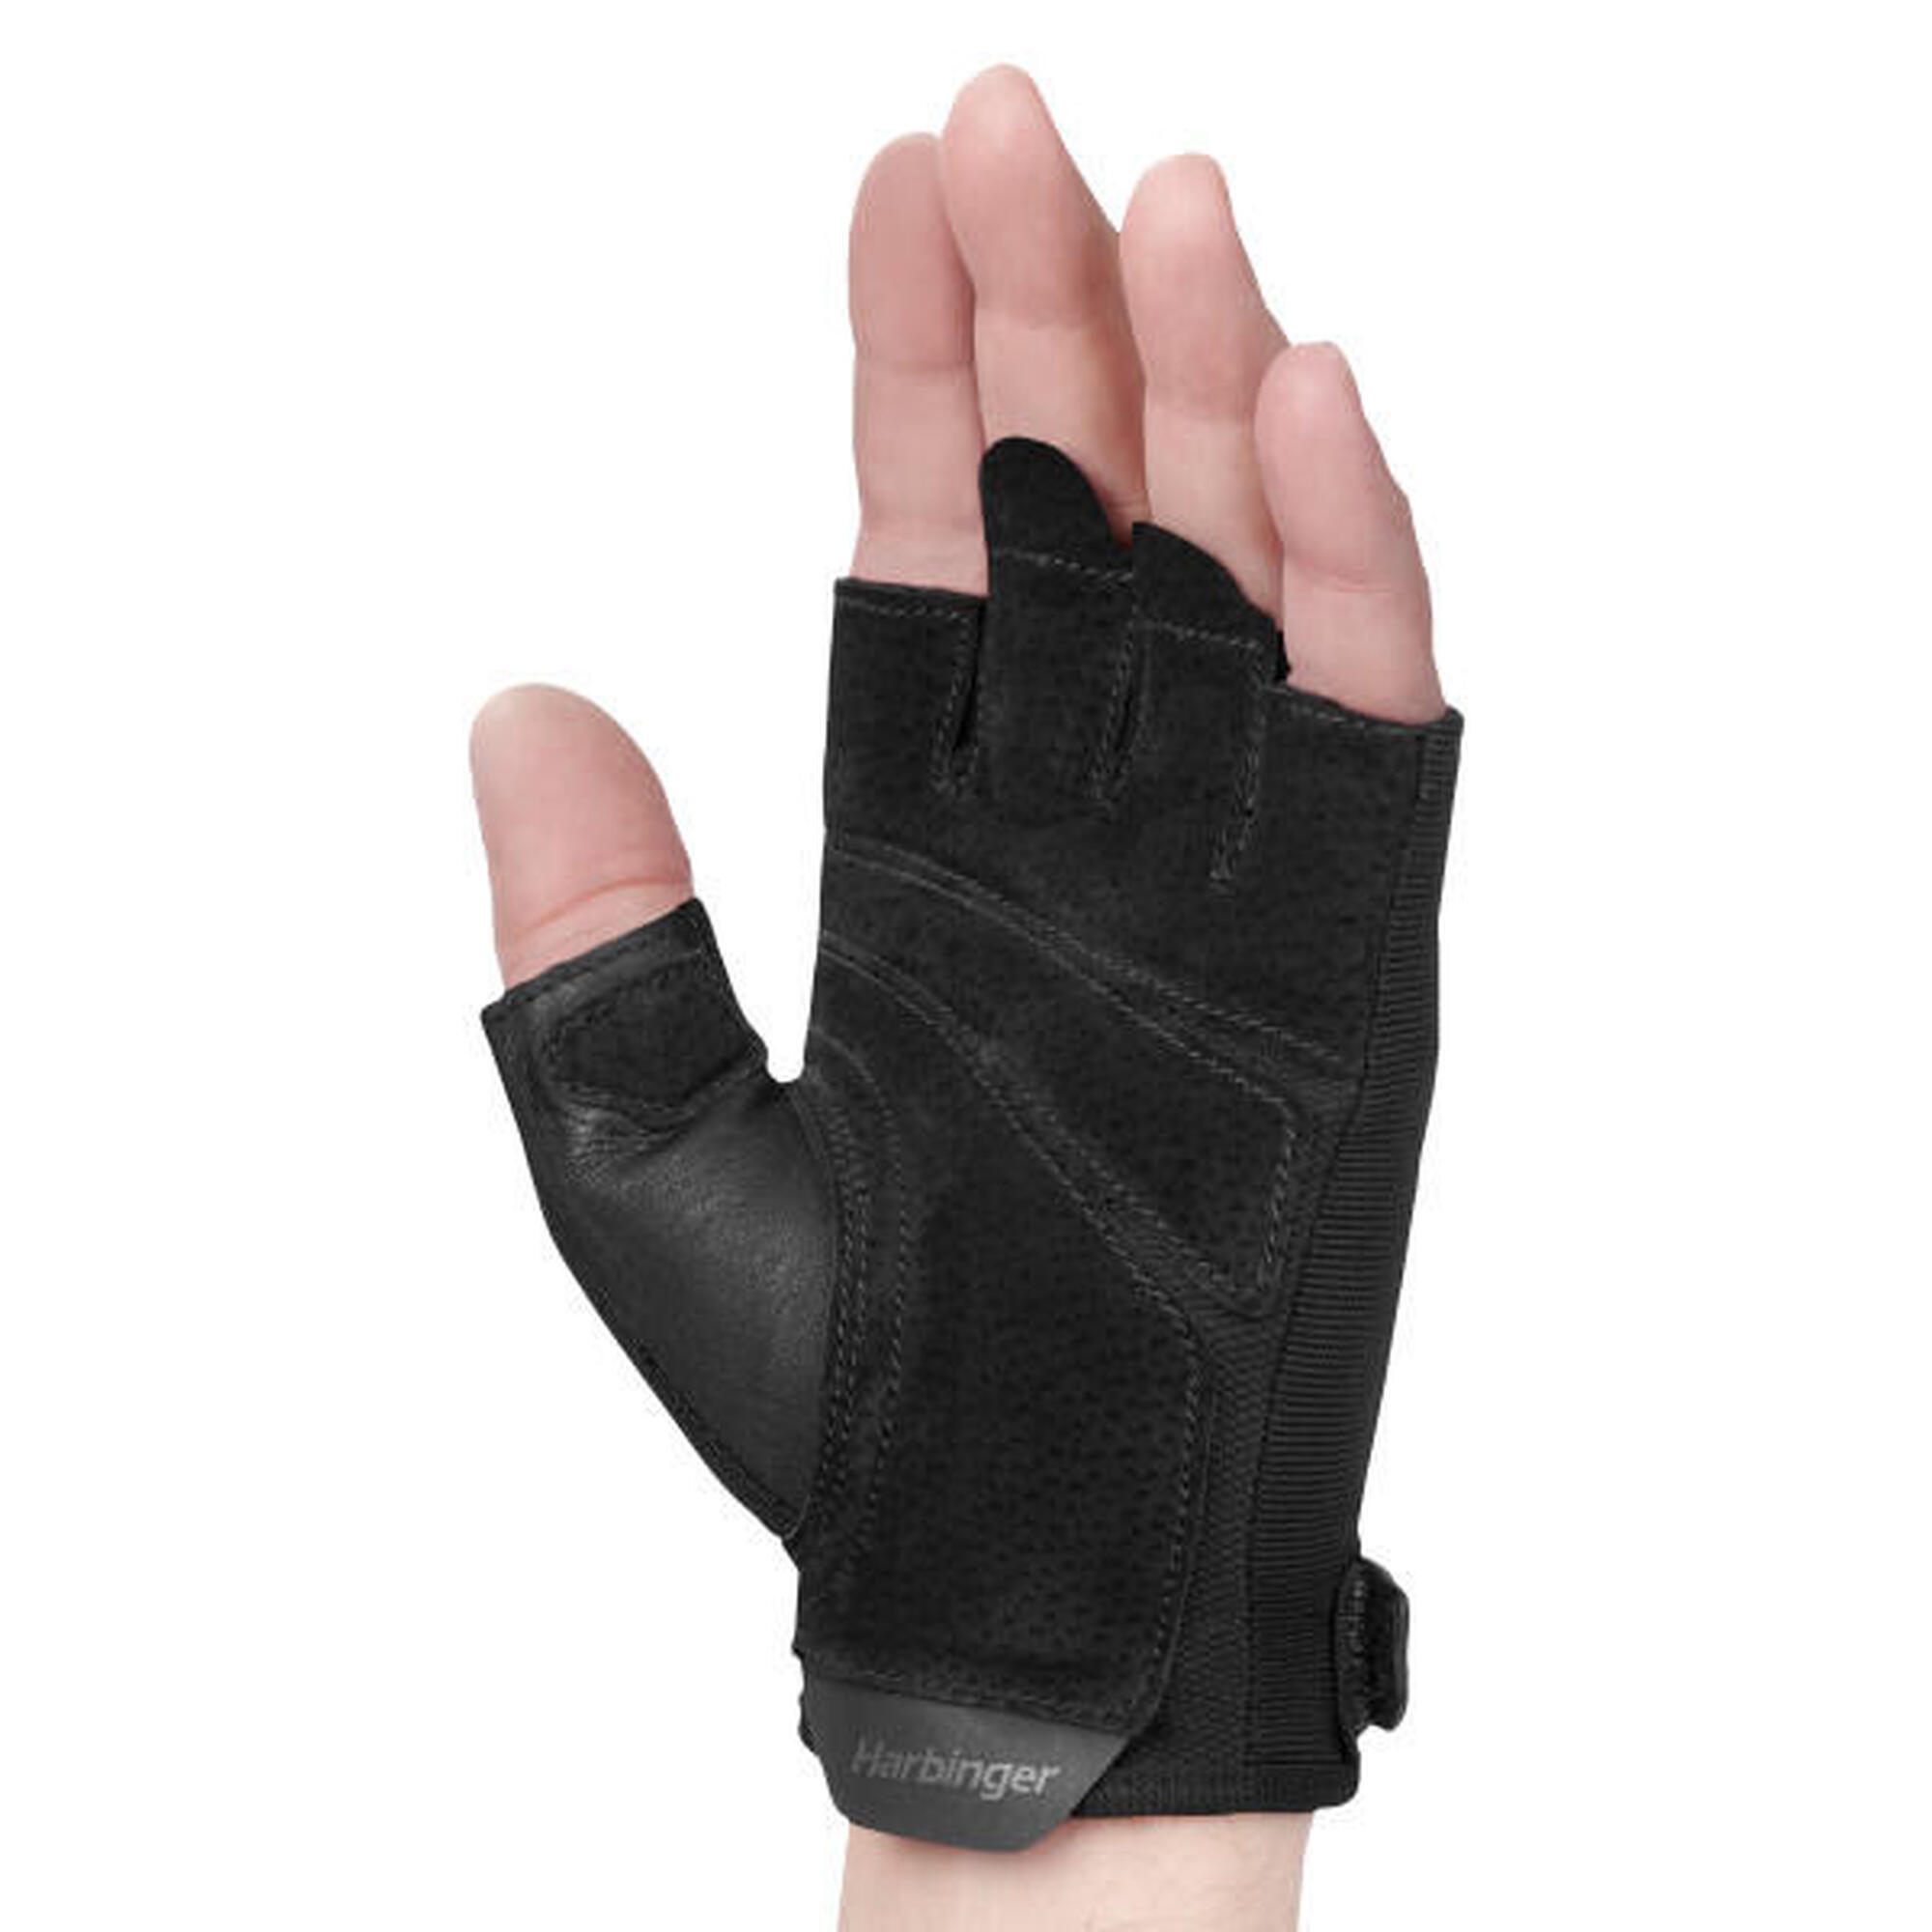 Harbinger Power Handschuhe: Fester Griff, optimaler Komfort. Größe S - Schwarz